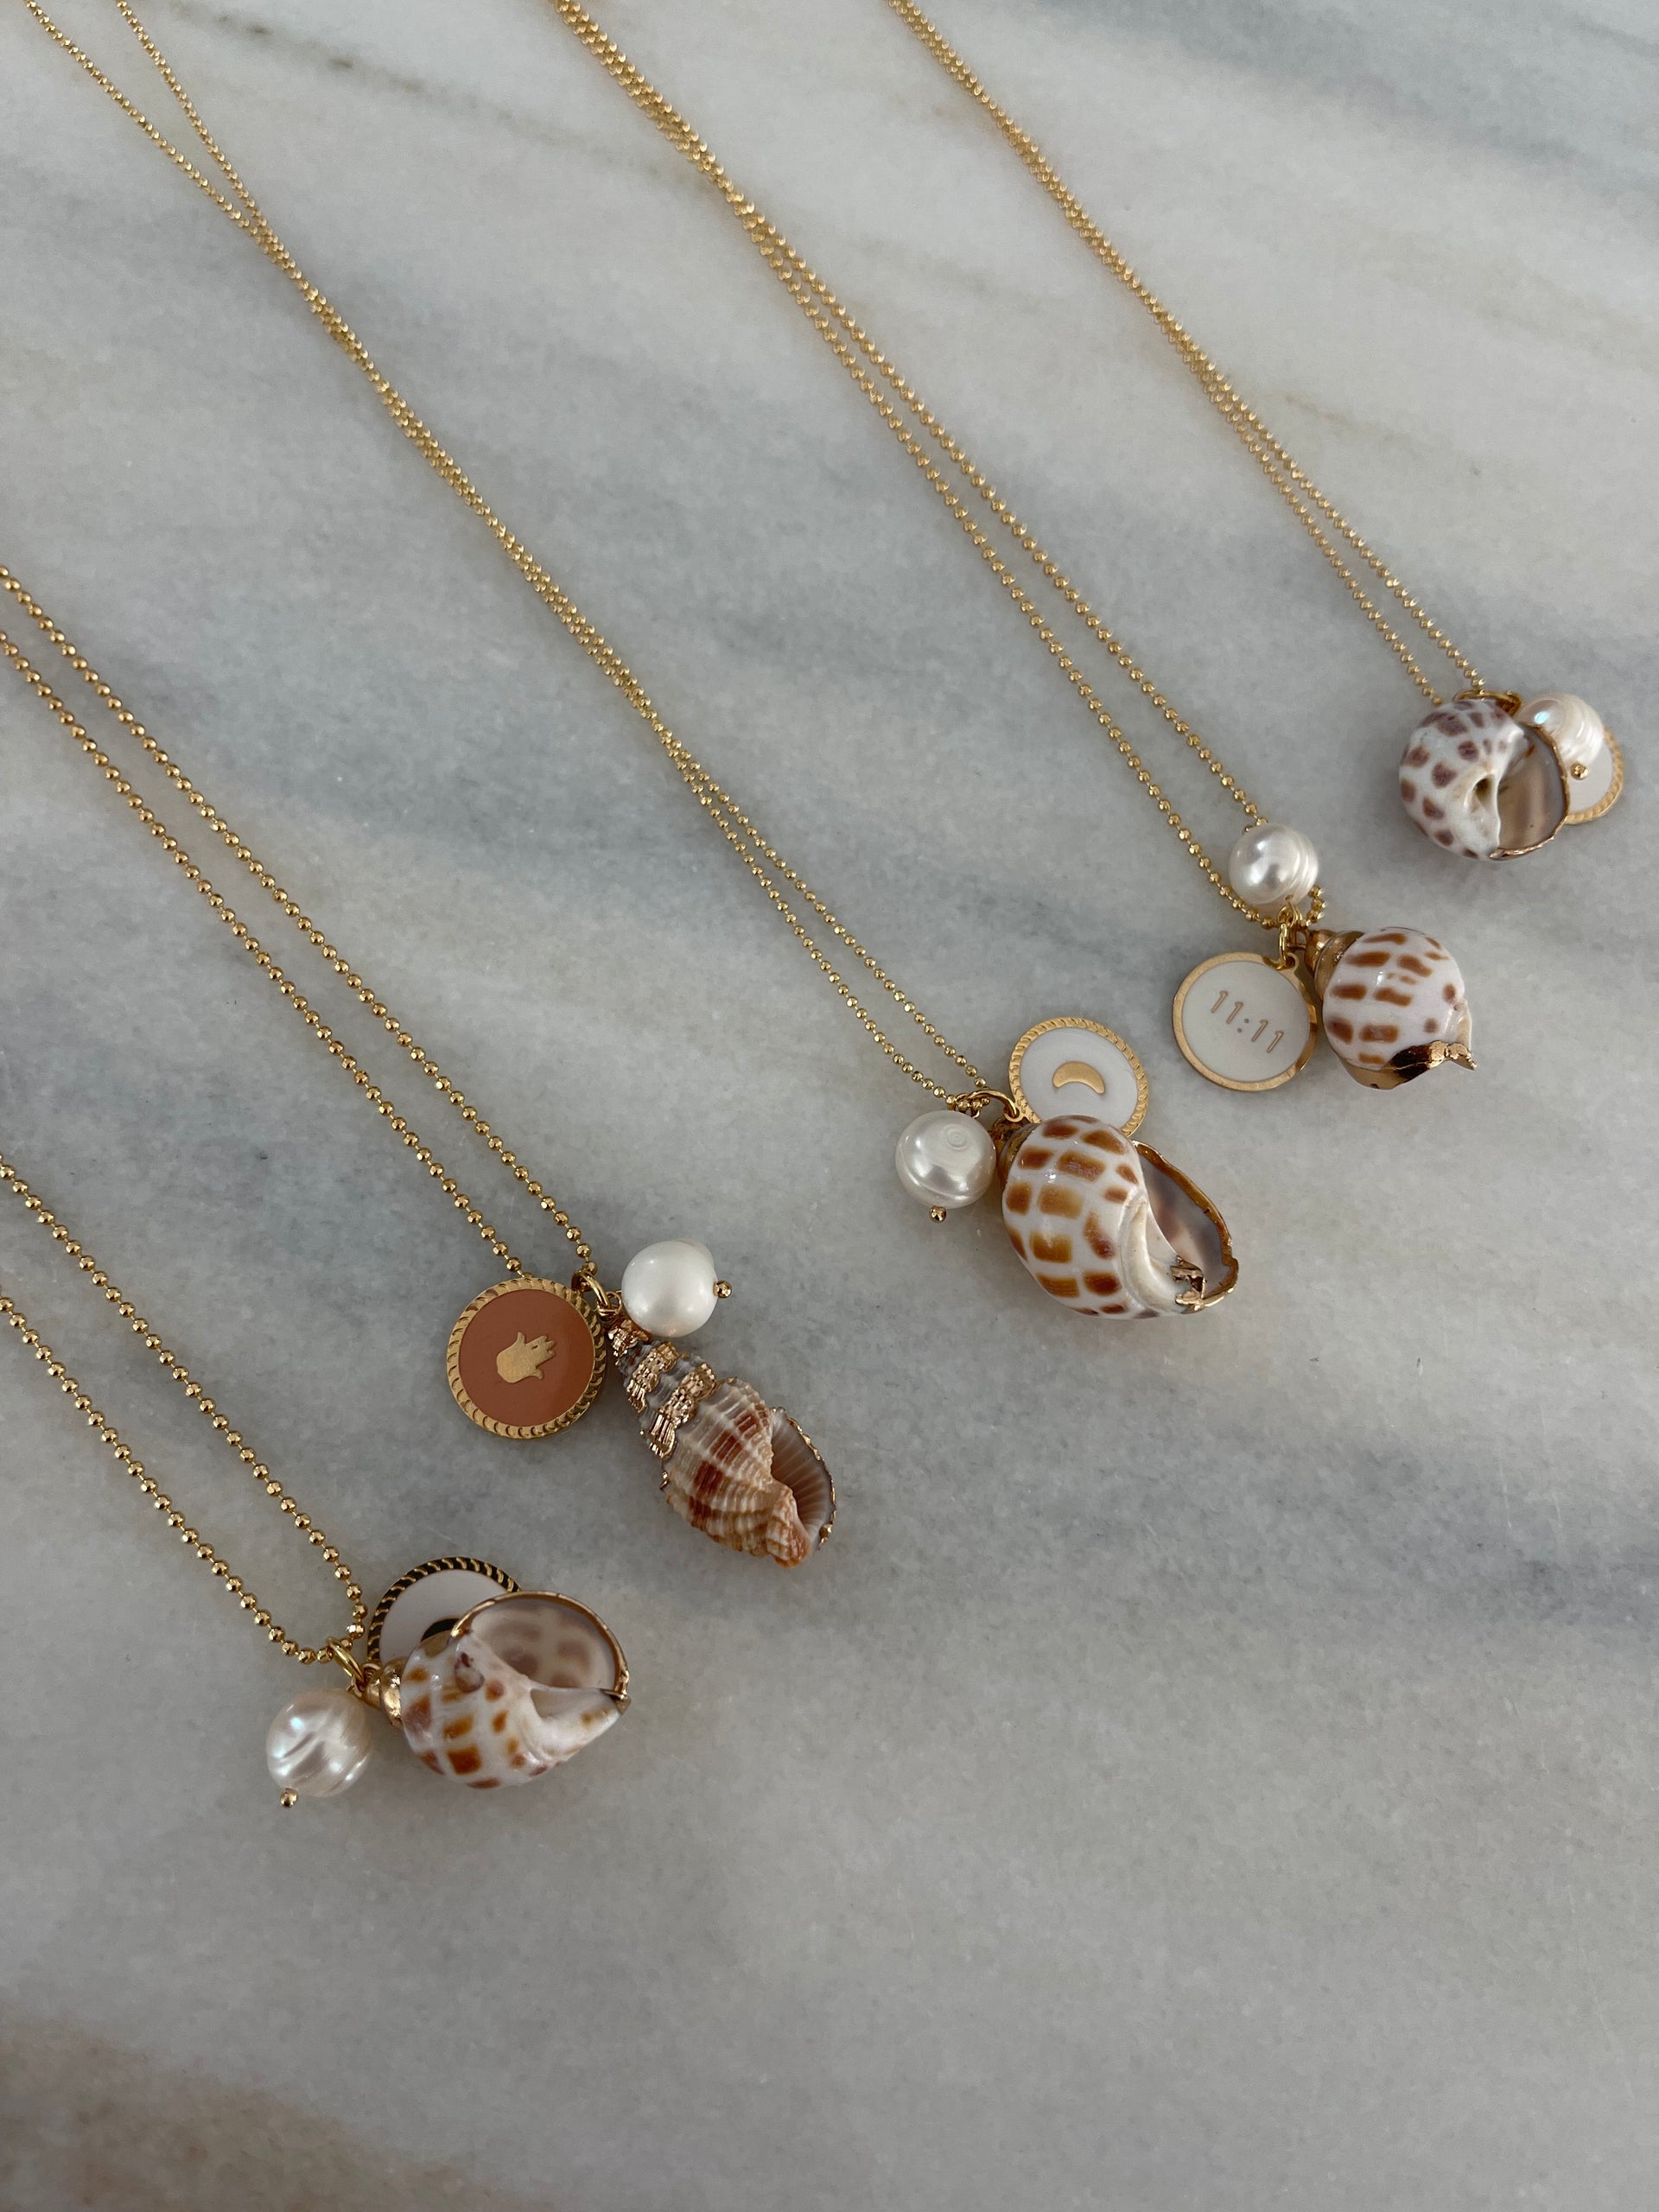 Seashells By The Seashore Necklace – Carolina Benoit